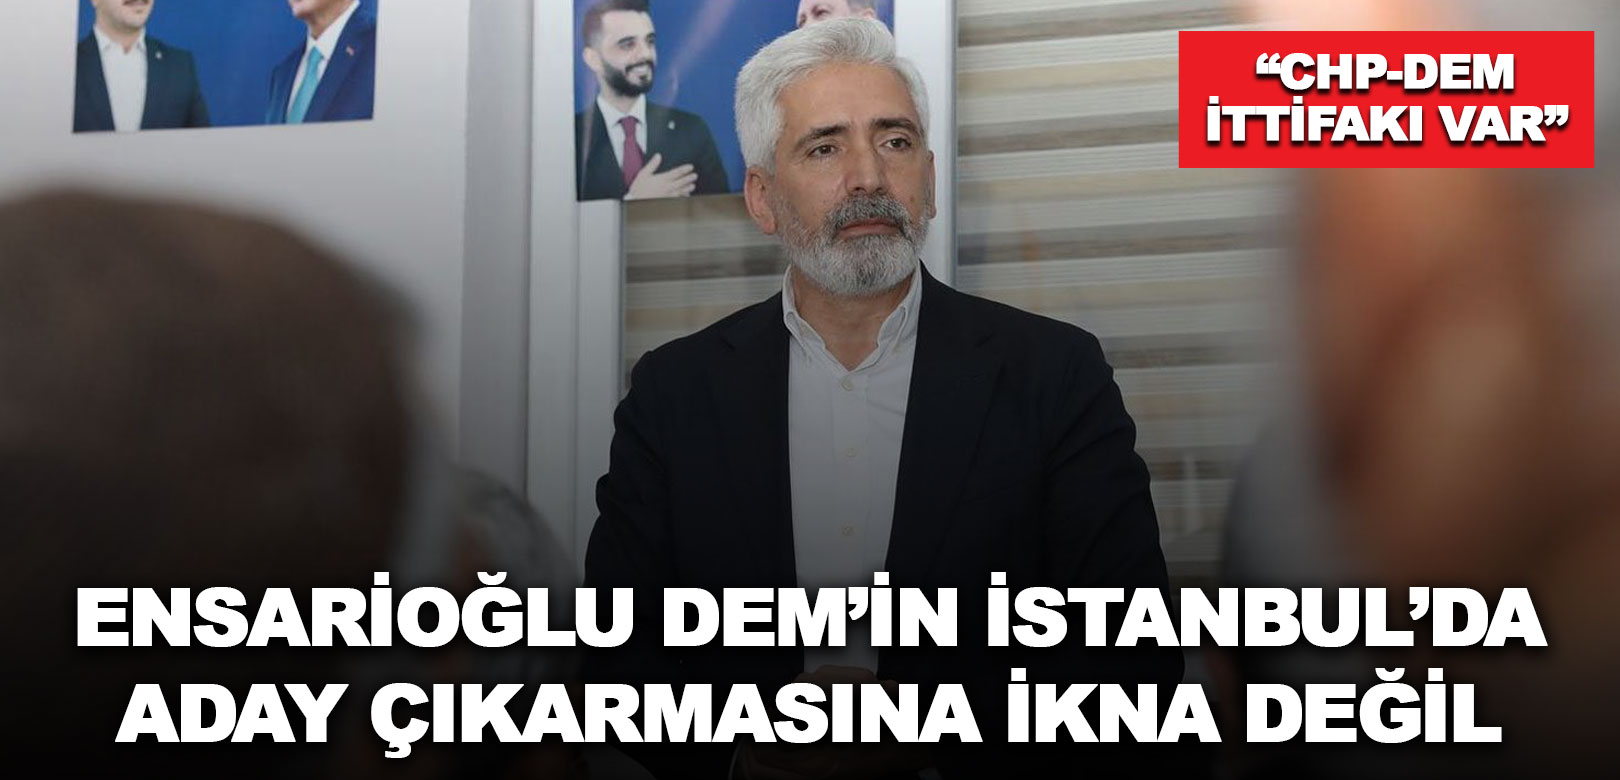 AKP Diyarbakır Milletvekili Ensarioğlu: Beştaş samimi değil, İstanbul'da ittifak var, DEM'in stratejisi numara